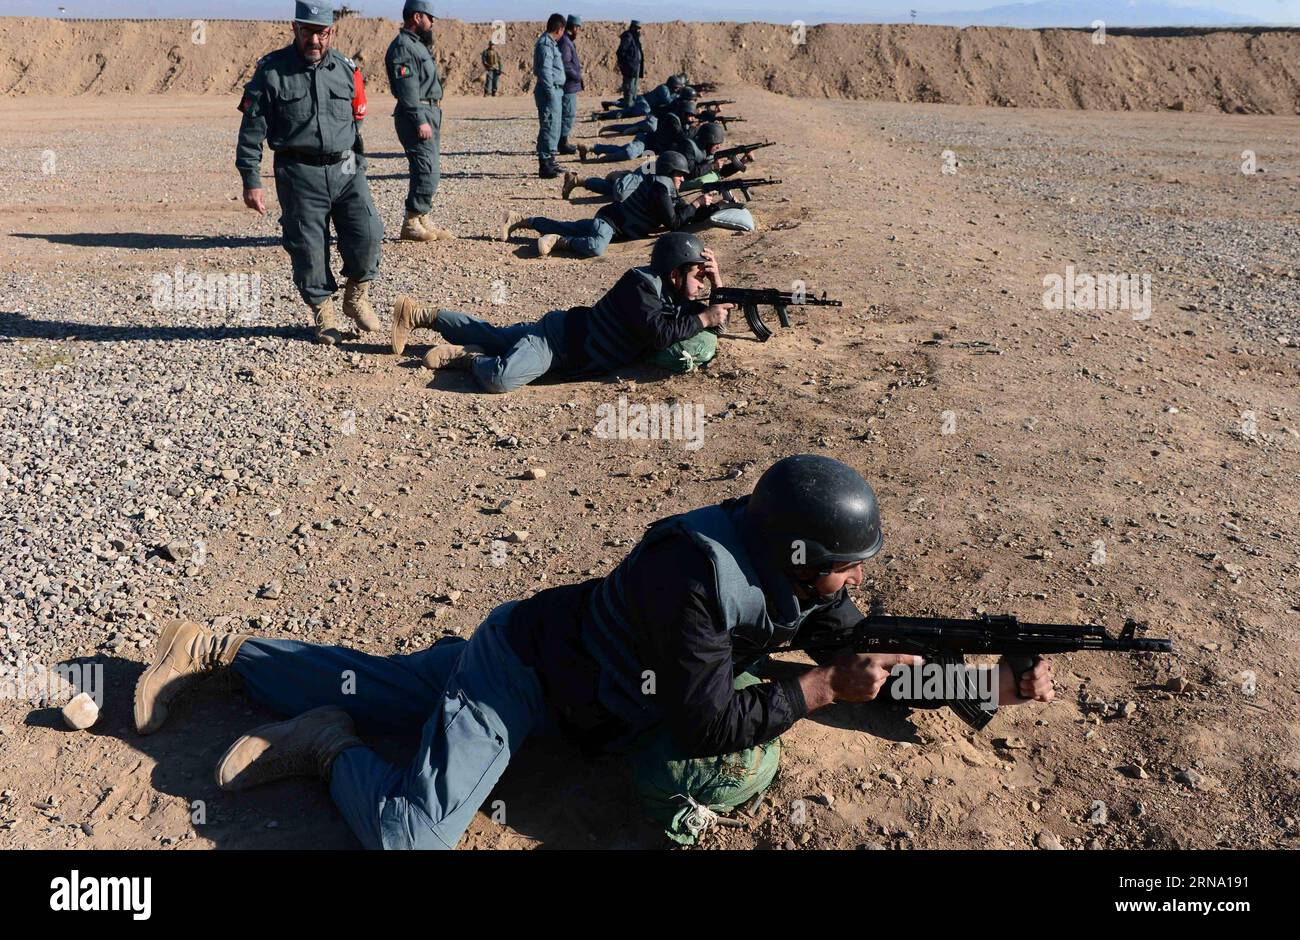 Afghanistan: Ausbildung von Polizisten in Herat (151229) -- HERAT, 28 dicembre 2015 -- poliziotti afghani partecipano ad un addestramento militare presso il centro di addestramento della polizia di Guzara nella provincia di Herat, Afghanistan occidentale, 28 dicembre 2015. Circa 950 agenti di polizia hanno ricevuto un addestramento al centro nella provincia di Herat. Le autorità afghane hanno accelerato l'addestramento delle forze di sicurezza, assumendo le accuse di sicurezza complete da parte delle forze NATO e statunitensi dall'inizio di quest'anno. ) AFGHANISTAN-HERAT-ADDESTRAMENTO MILITARE SardarxKarimi PUBLICATIONxNOTxINxCHN Afghanistan formazione da poliziotti a Herat 15 Foto Stock